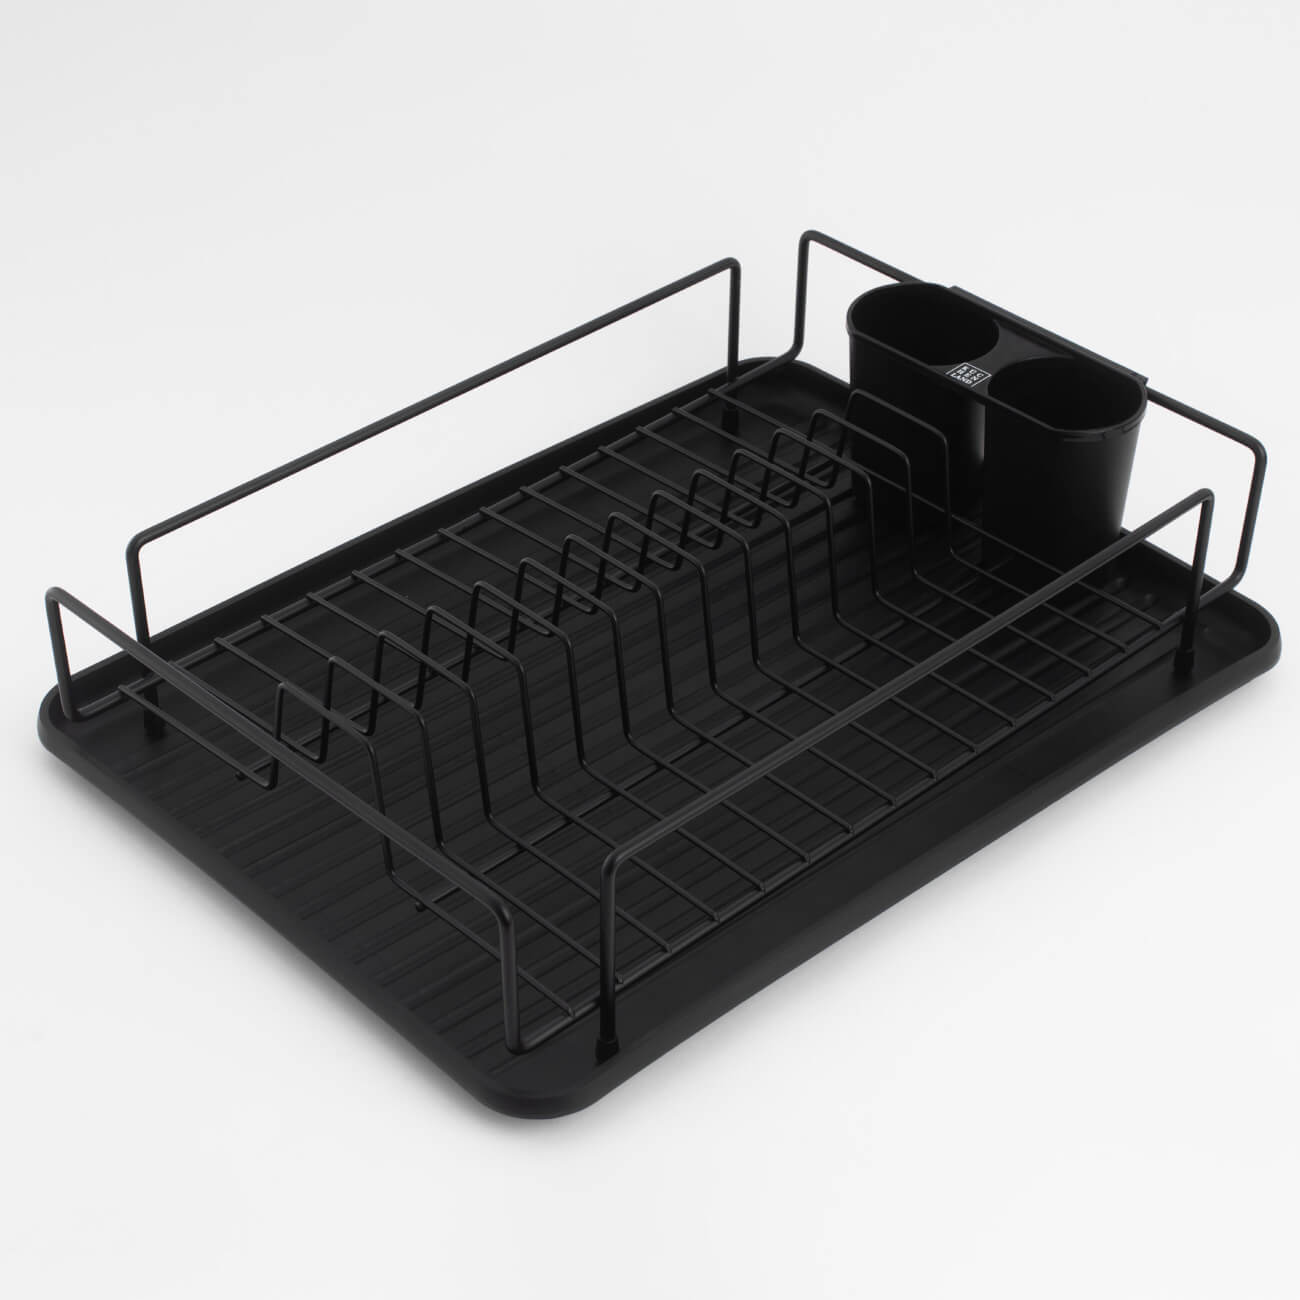 Сушилка для посуды, 42х27 см, с поддоном, пластик/металл, черная, Black style изображение № 1